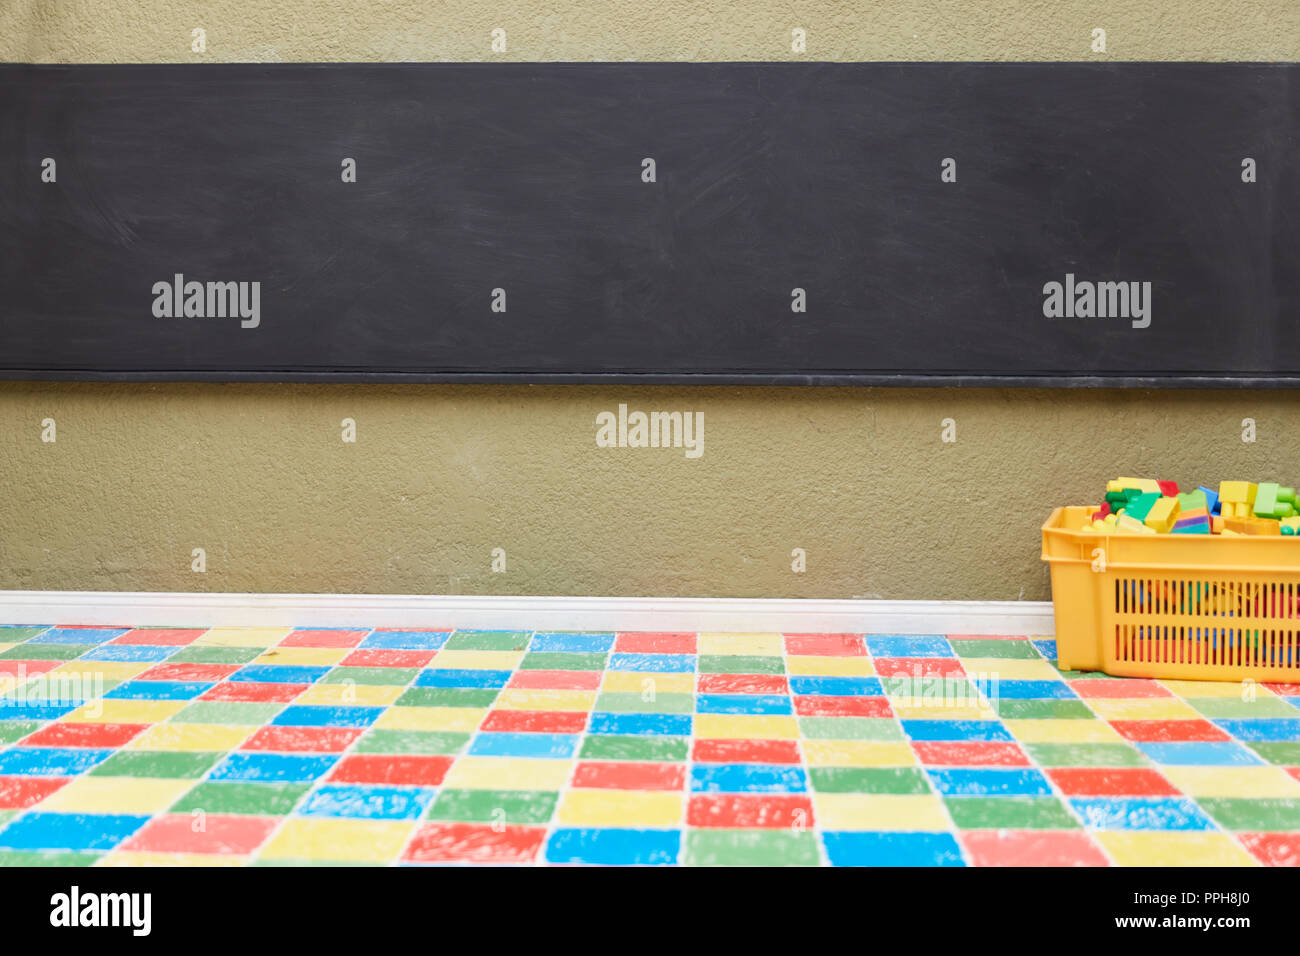 Tafel oder Whiteboard in einem Klassenzimmer einer Schule oder Kindertagesstätte Stockfoto